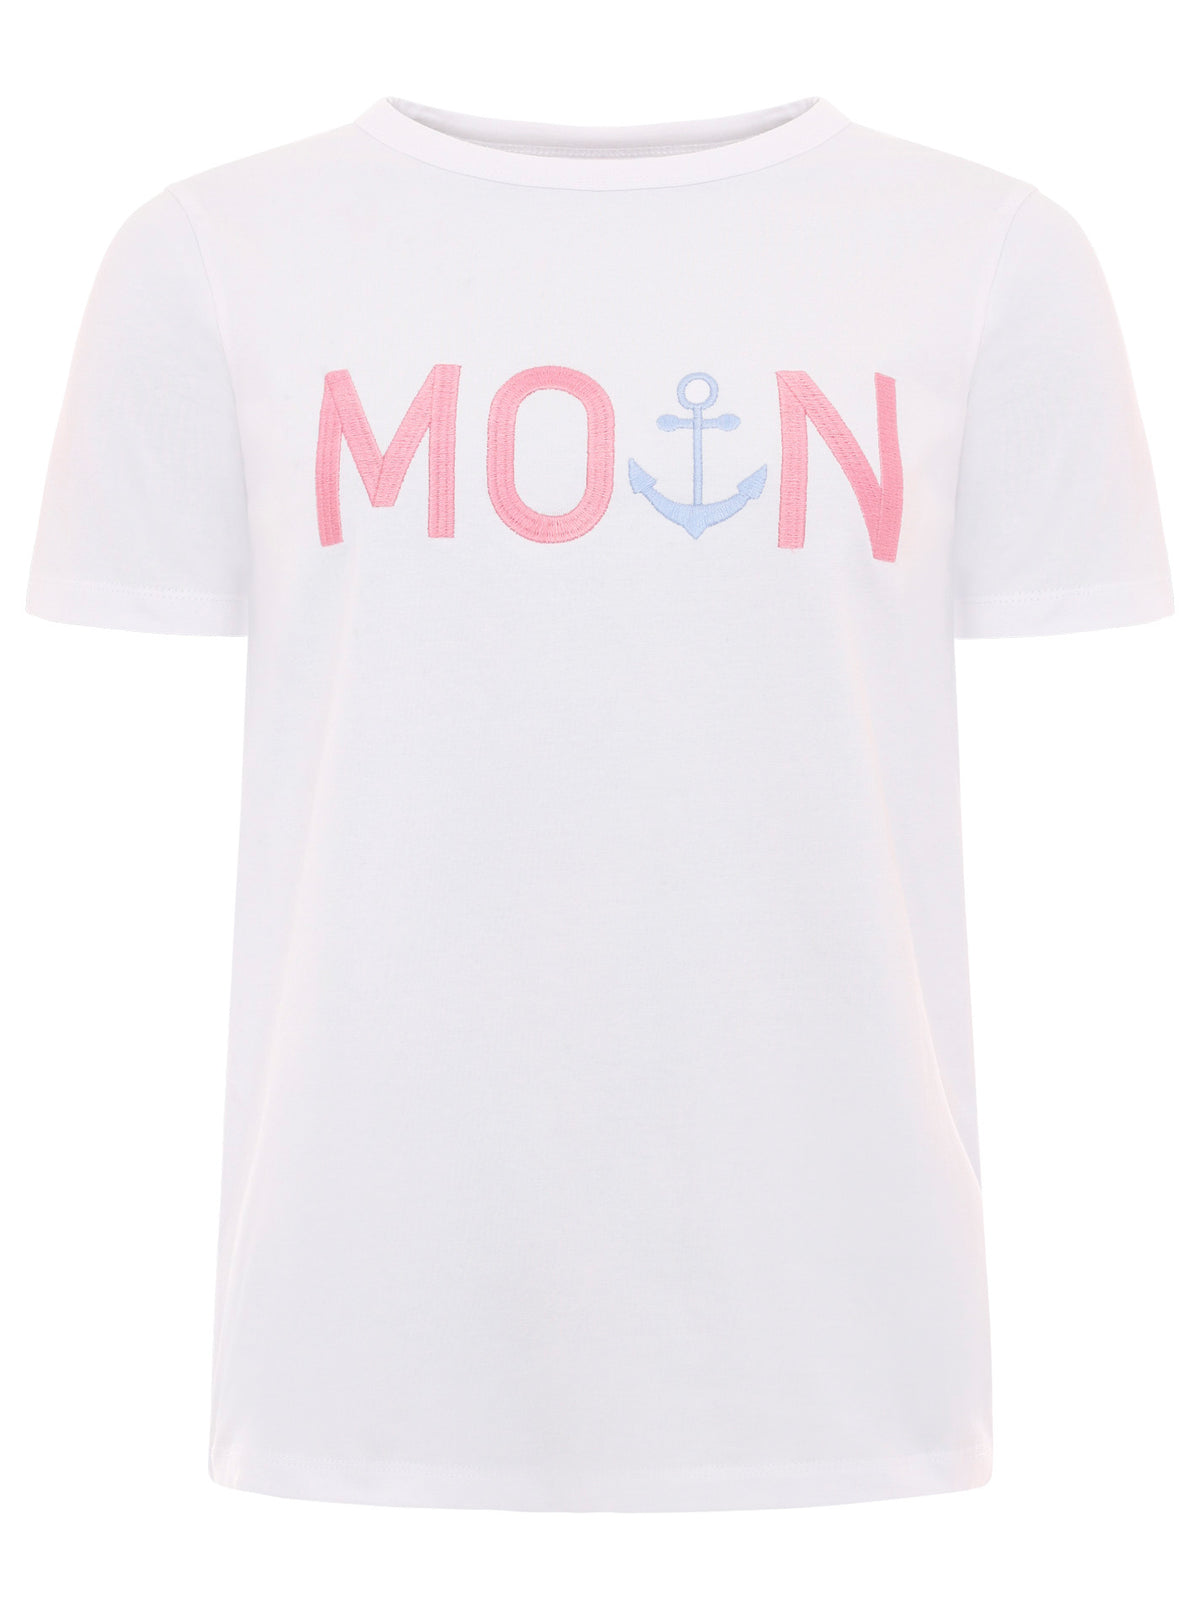 Zwillingsherz - Moin T-Shirt - Weiß